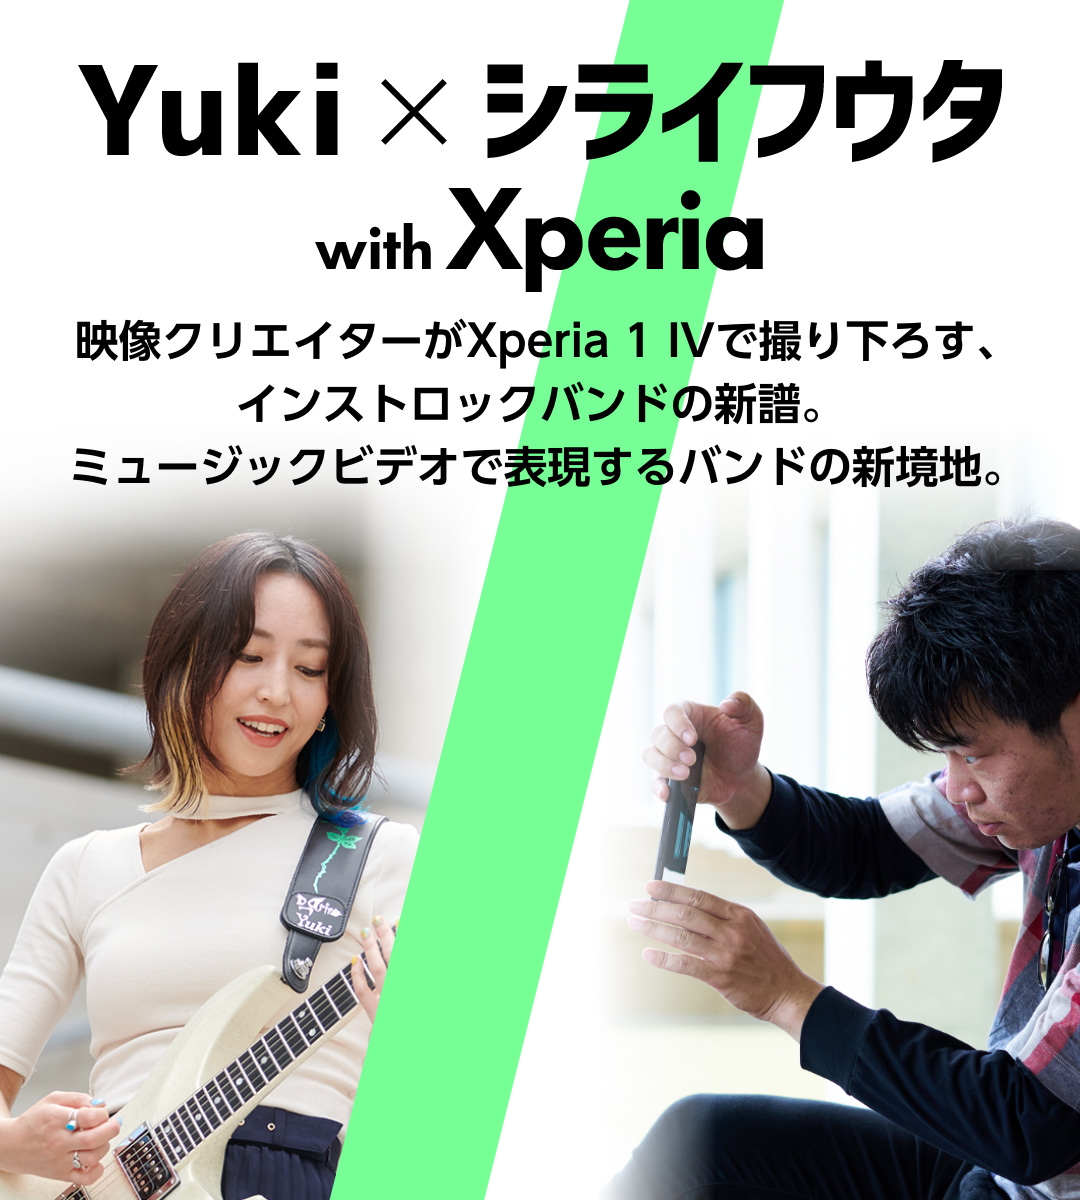 Yuki x シライフウタ with Xperia 映像クリエイターがXperia 1 IVで撮り下ろす、インストロックバンドの新譜。ミュージックビデオで表現するバンドの新境地。